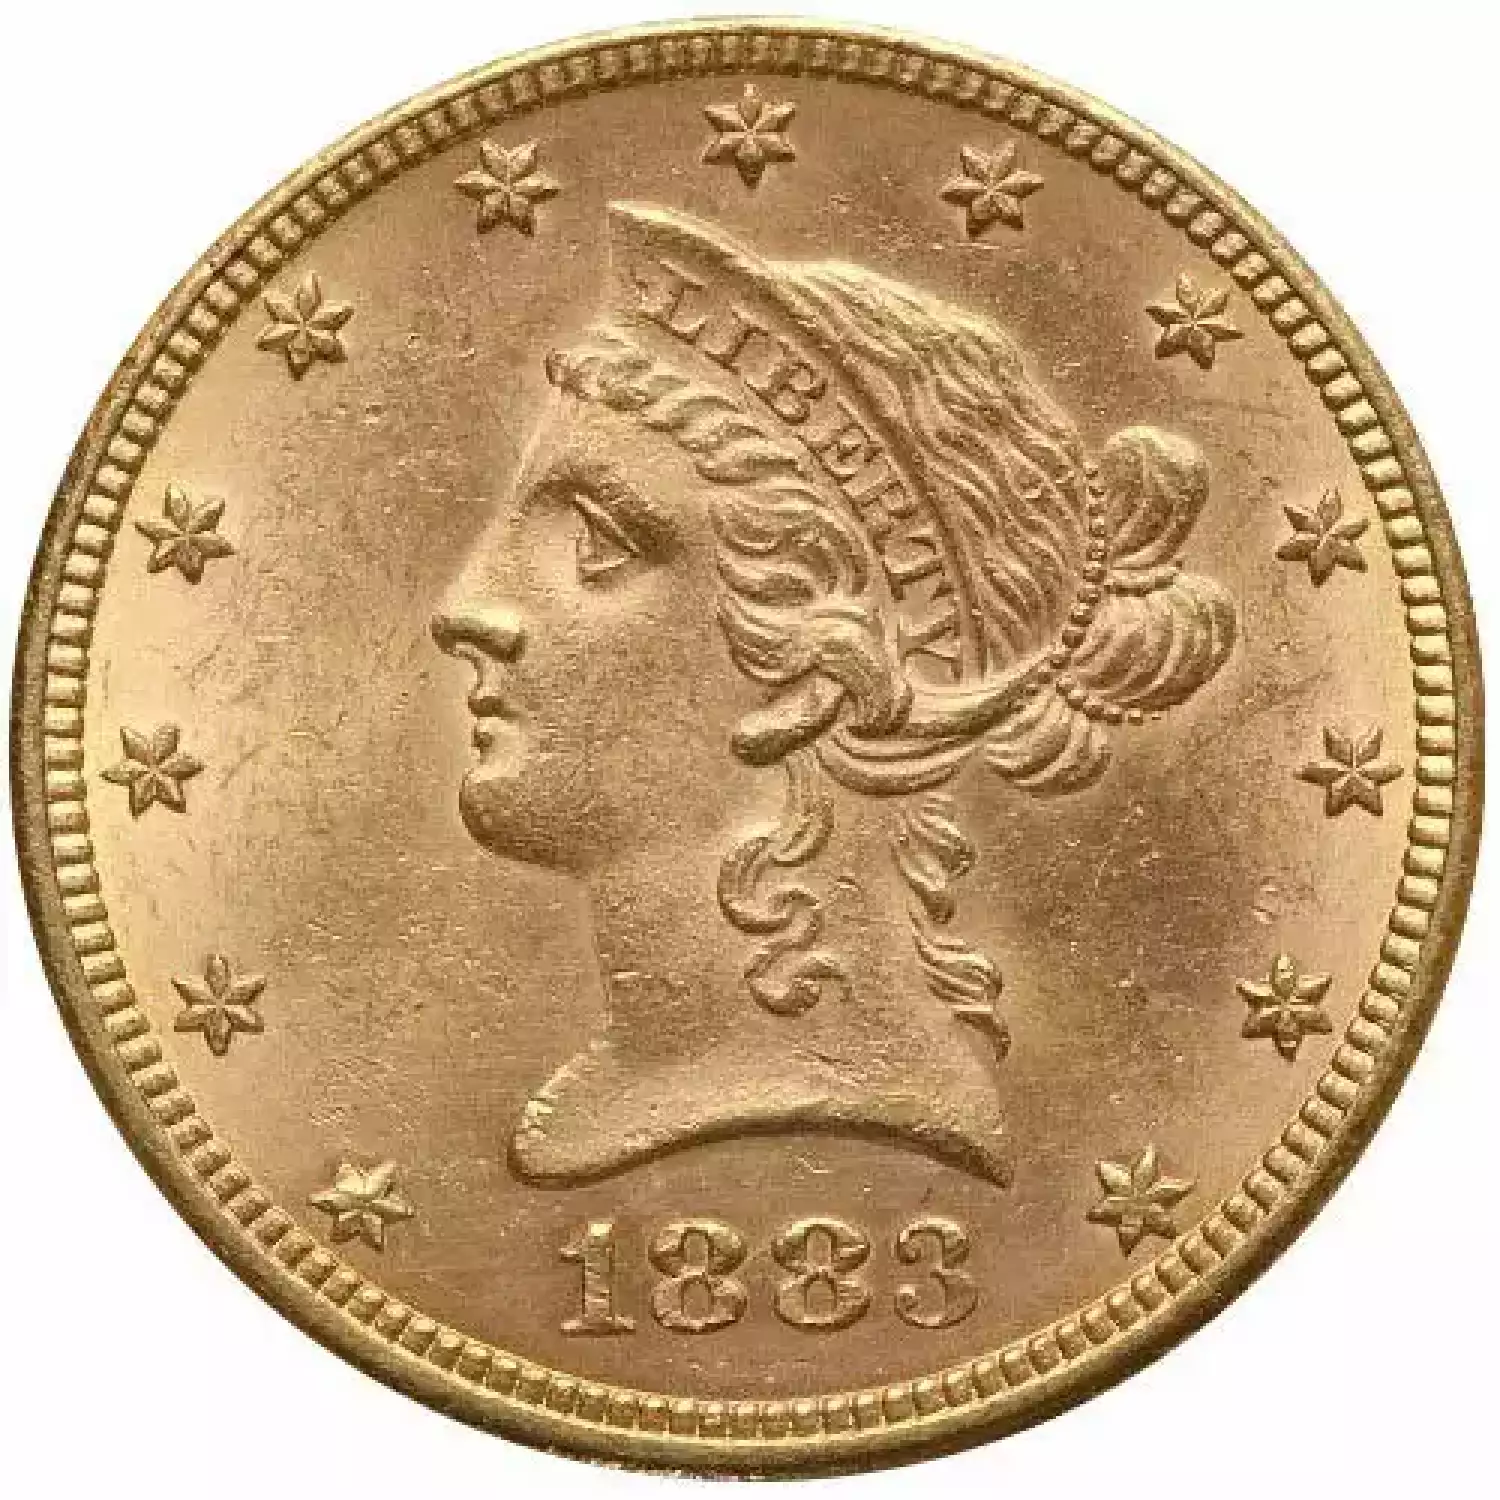 Pre-33 $10 Liberty Gold Eagle Coin (BU)